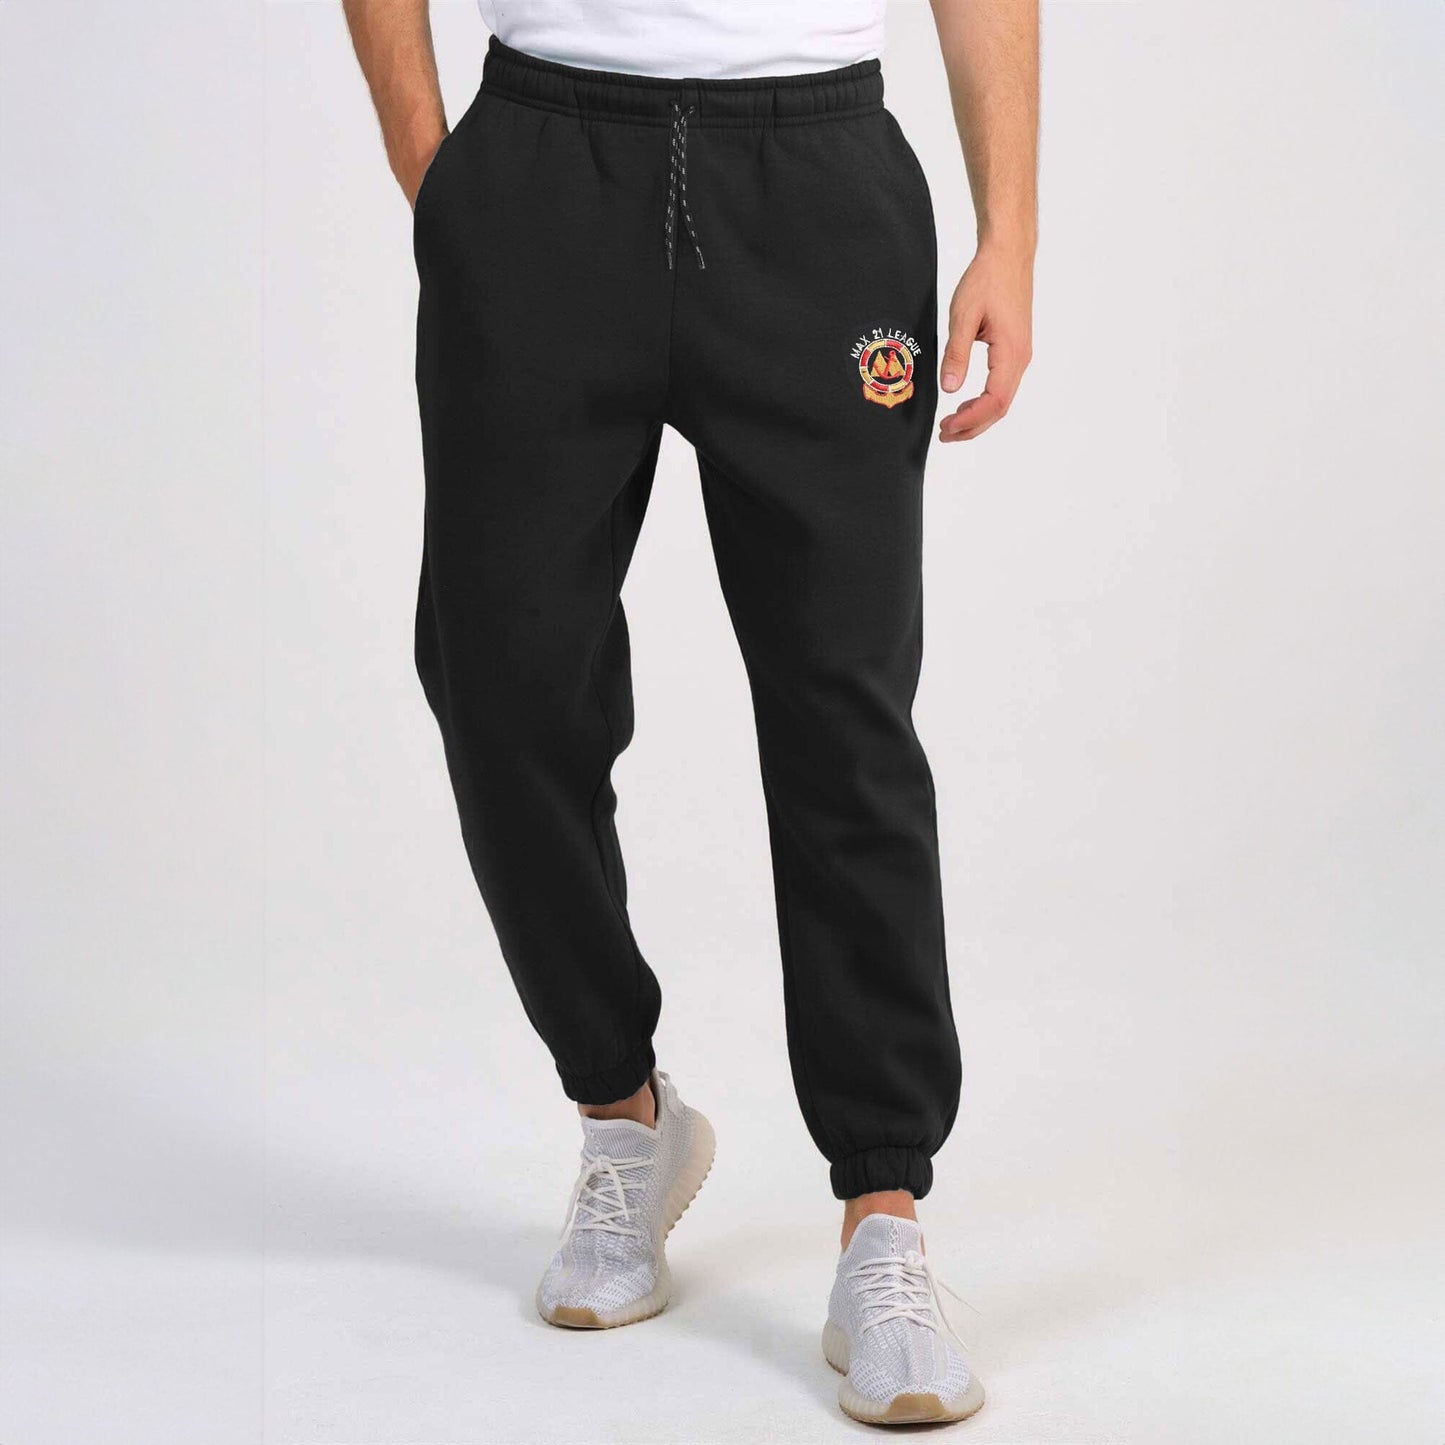 MAX 21 Men's League Embroidered Fleece Joggers Pants Men's Trousers SZK Black S 